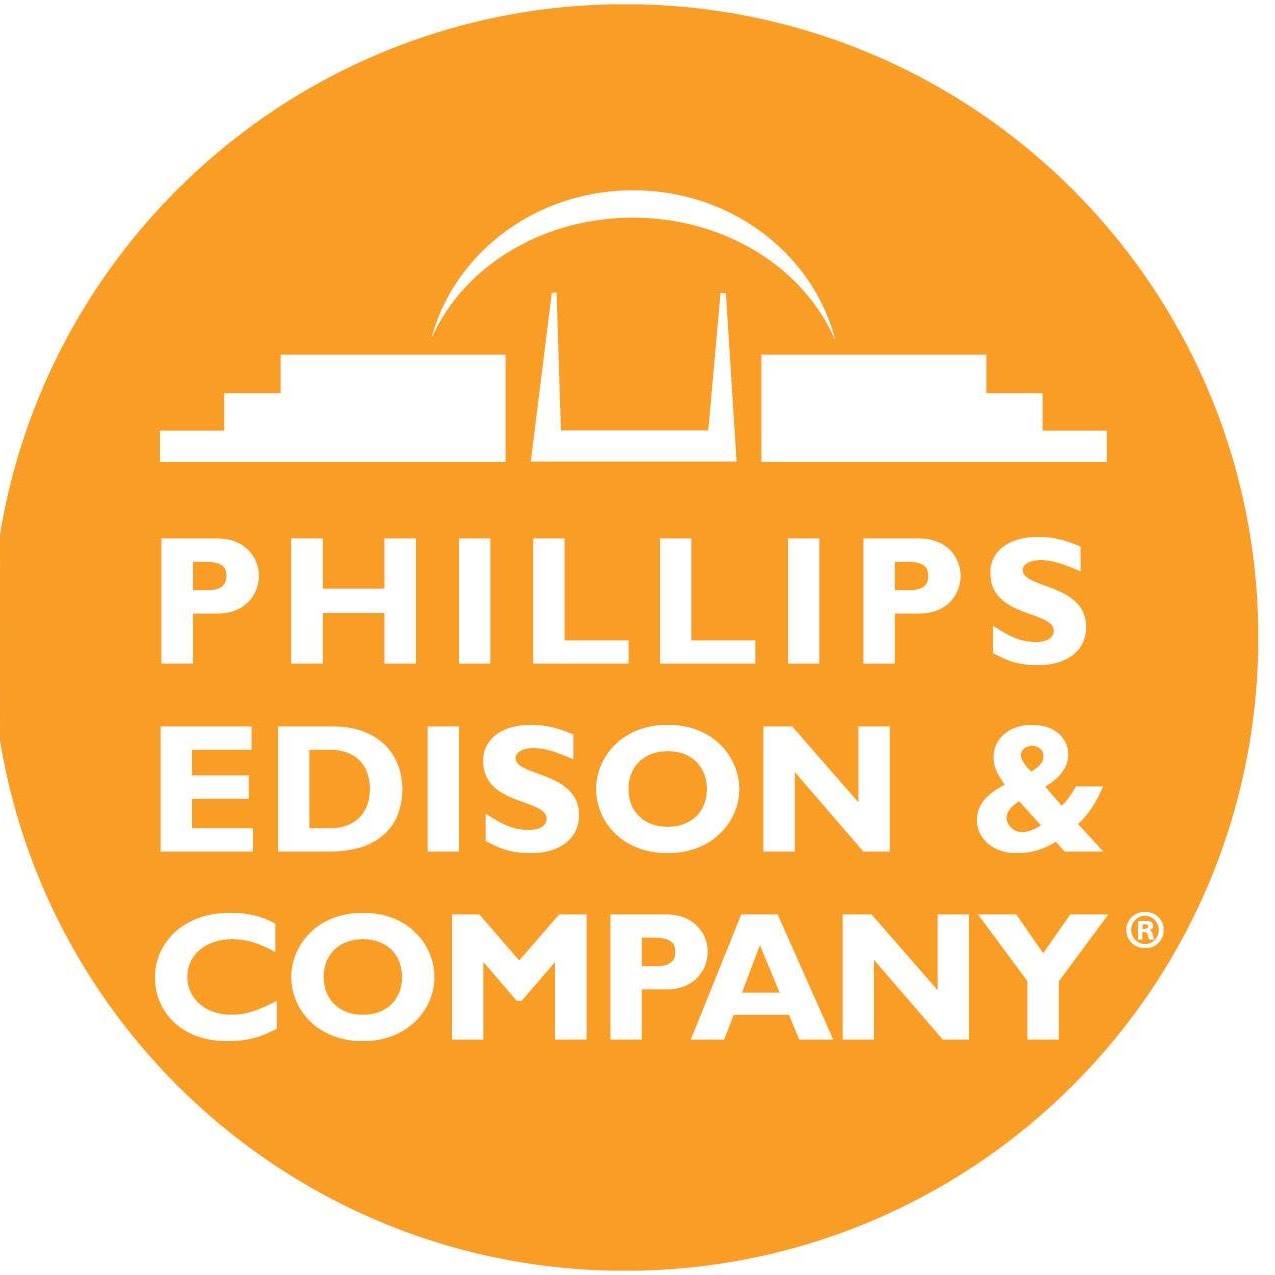 Phillips Edison & Company - Montville Commons Shopping Center